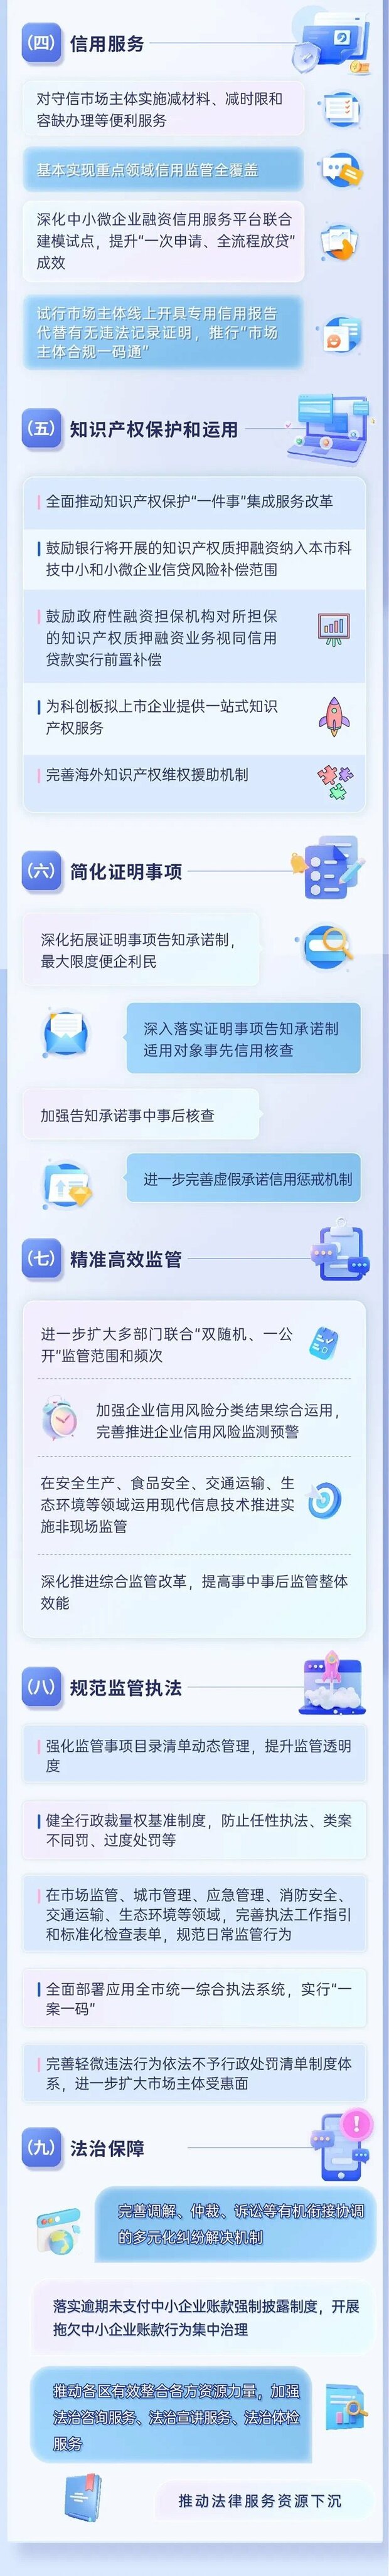 【聚焦上海】沪持续优化营商环境行动方案6.0版出台